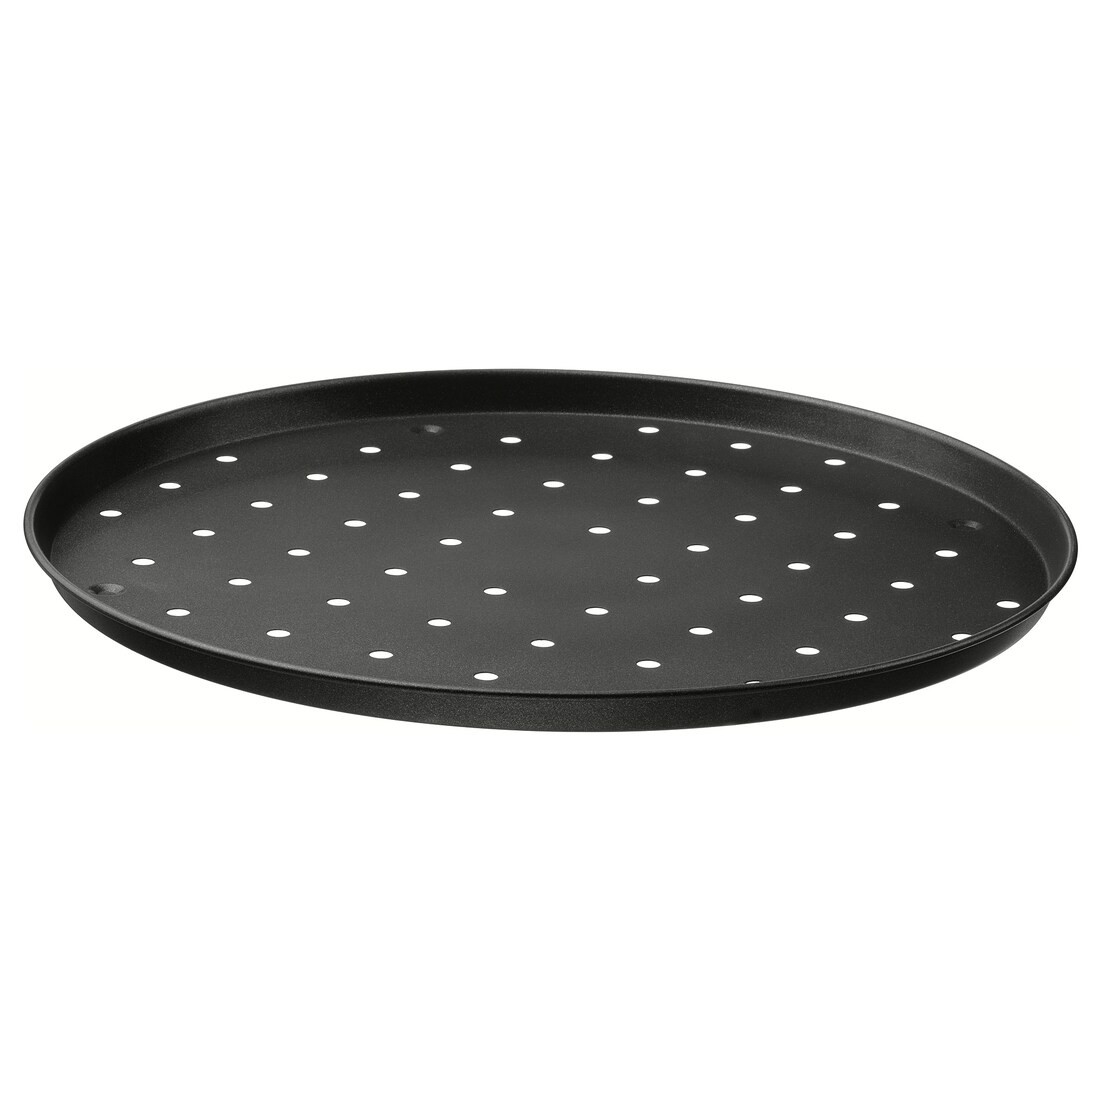 MÅNTAGG Сковорода для пиццы, антипригарное покрытие темно-серого цвета, 37 см